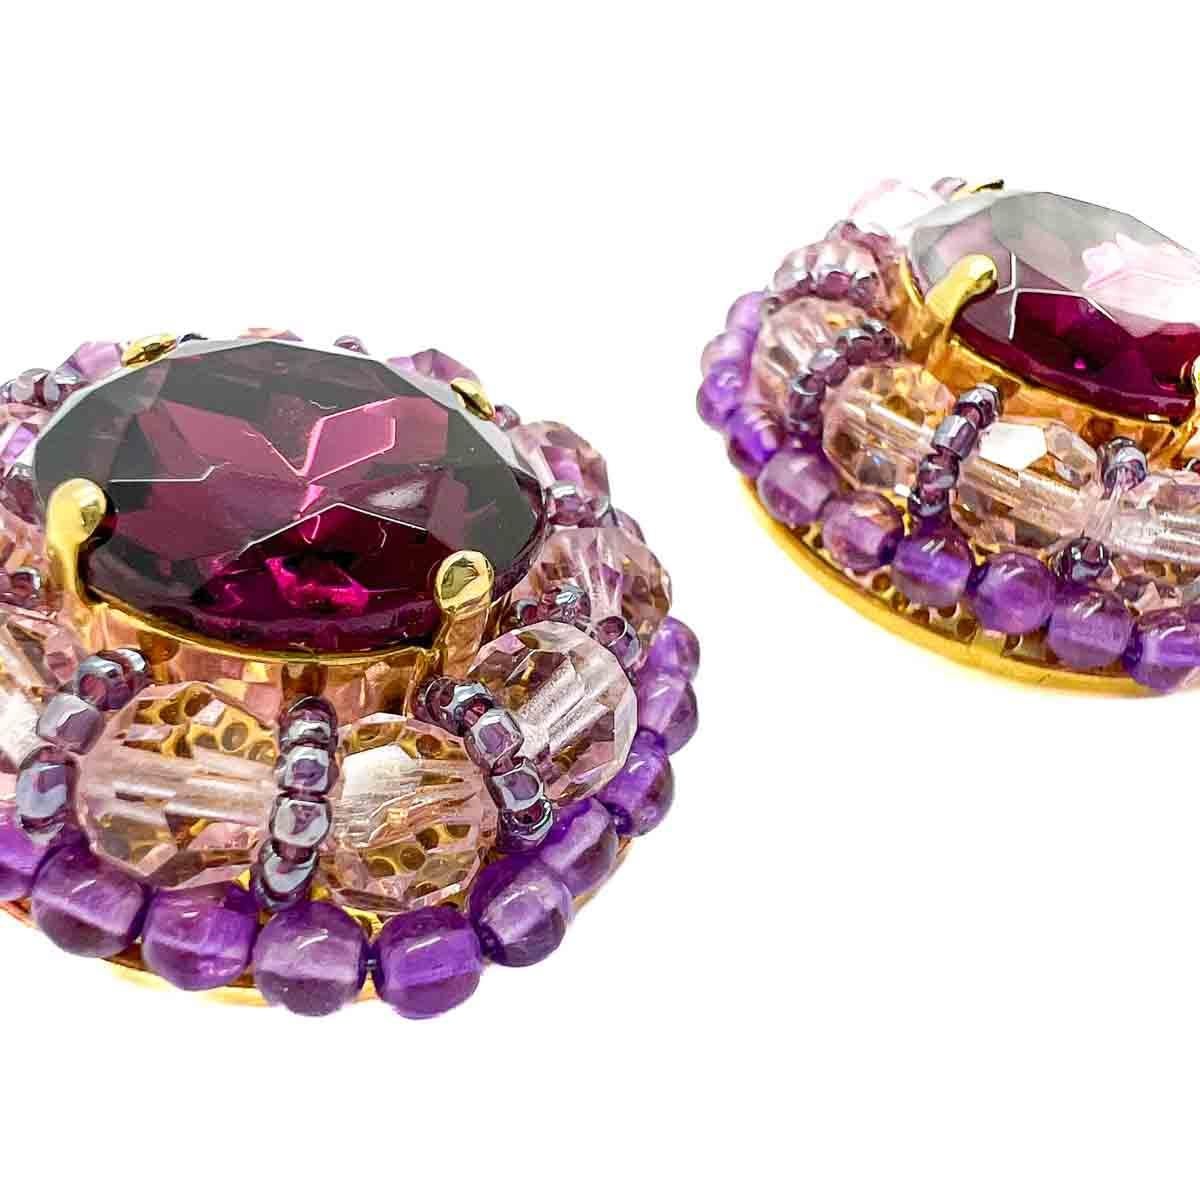 Ein Paar Vintage Grand Amethyst Kristall Ohrringe. Die üppig dimensionierten Ohrringe sind reich an Steinen. Ein großer Amethystkristall wird von blassrosa und blassamethystfarbenen Perlen in einem kunstvollen Design umrahmt. Wunderbar dramatisch